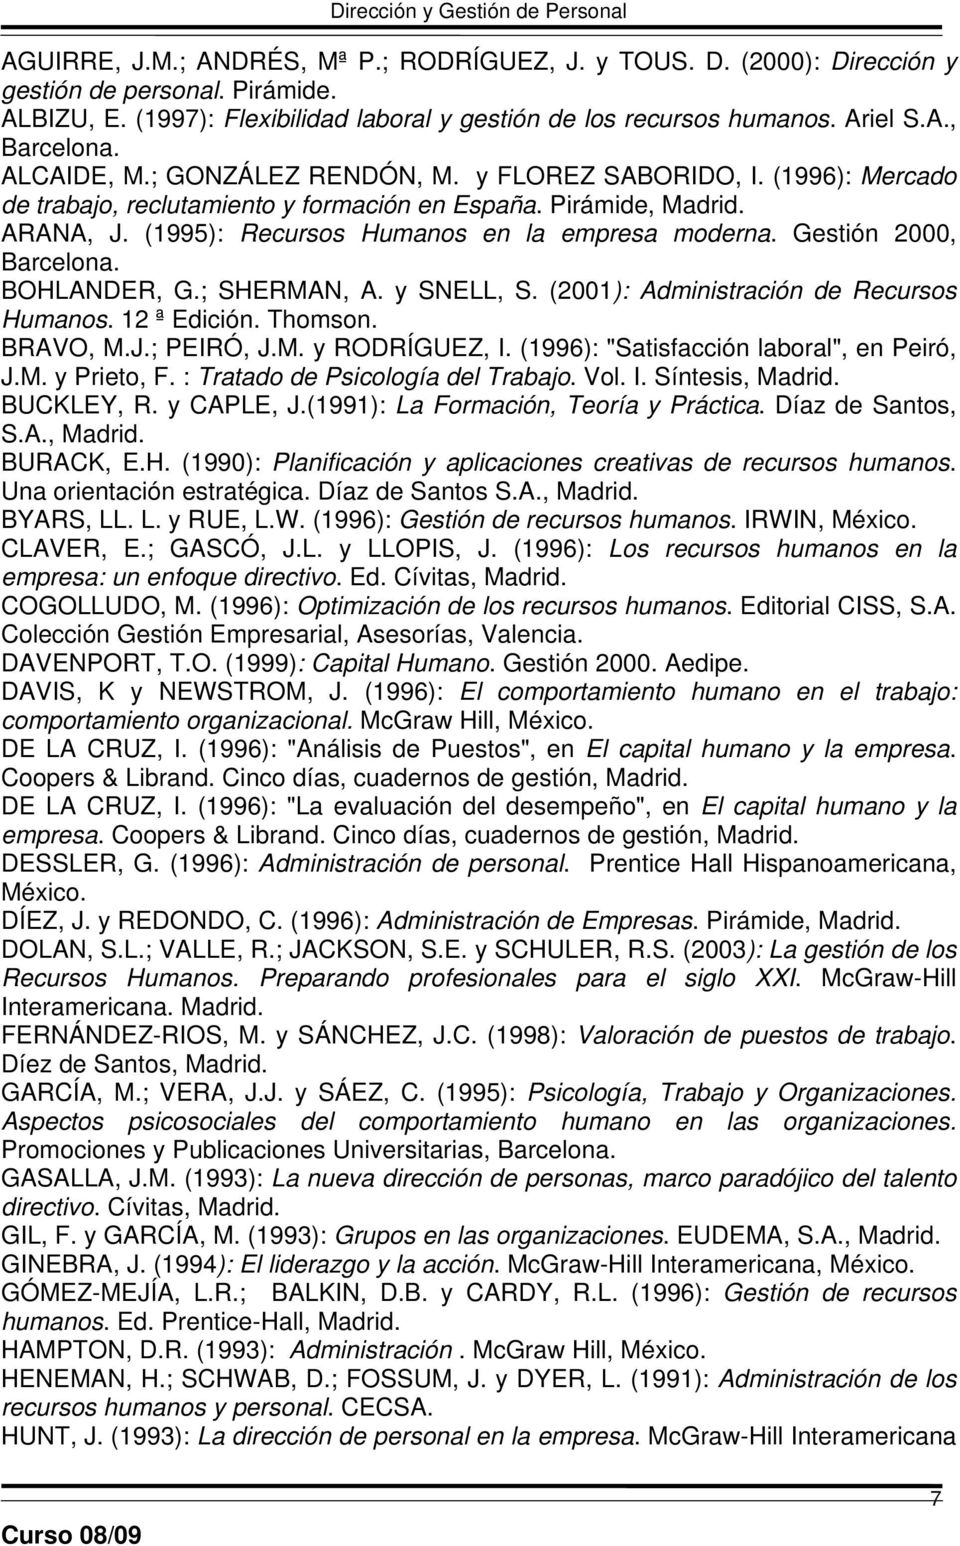 Gestión 2000, Barcelona. BOHLANDER, G.; SHERMAN, A. y SNELL, S. (2001): Administración de Recursos Humanos. 12 ª Edición. Thomson. BRAVO, M.J.; PEIRÓ, J.M. y RODRÍGUEZ, I.